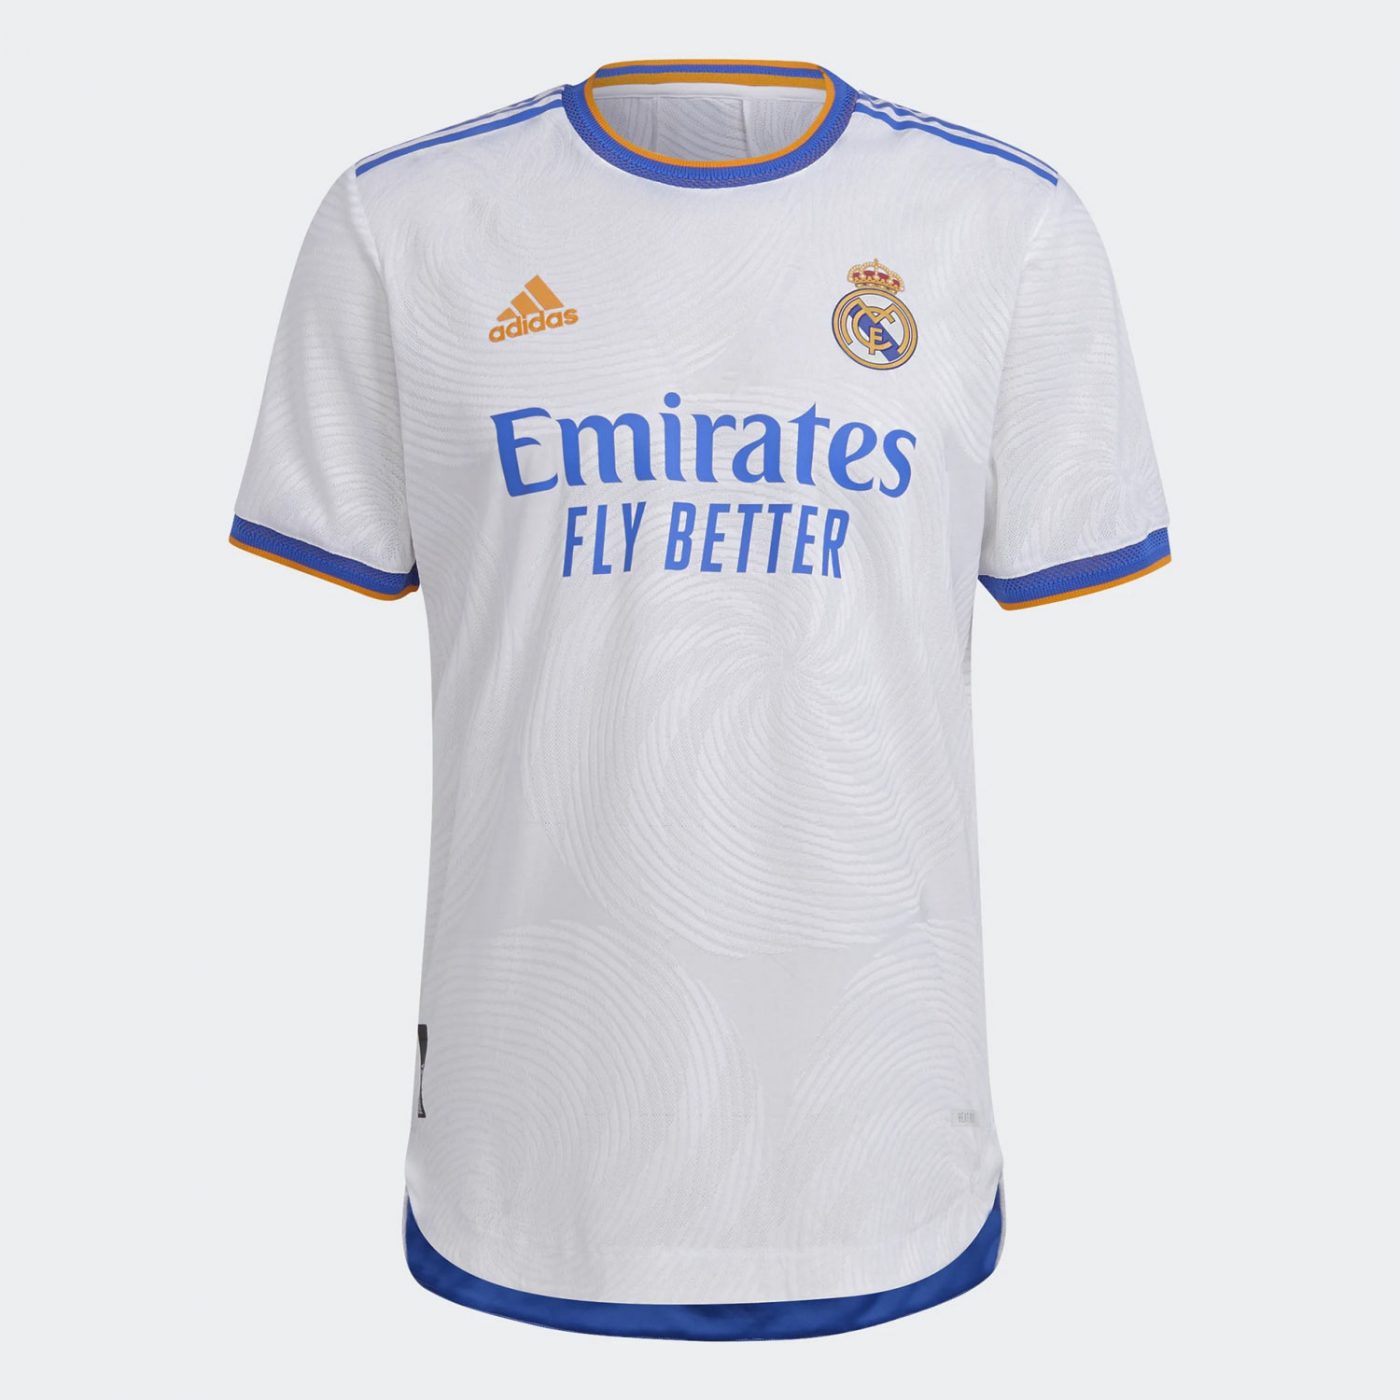 Maglia Real Madrid 20212022, arancio e blu per i Blancos